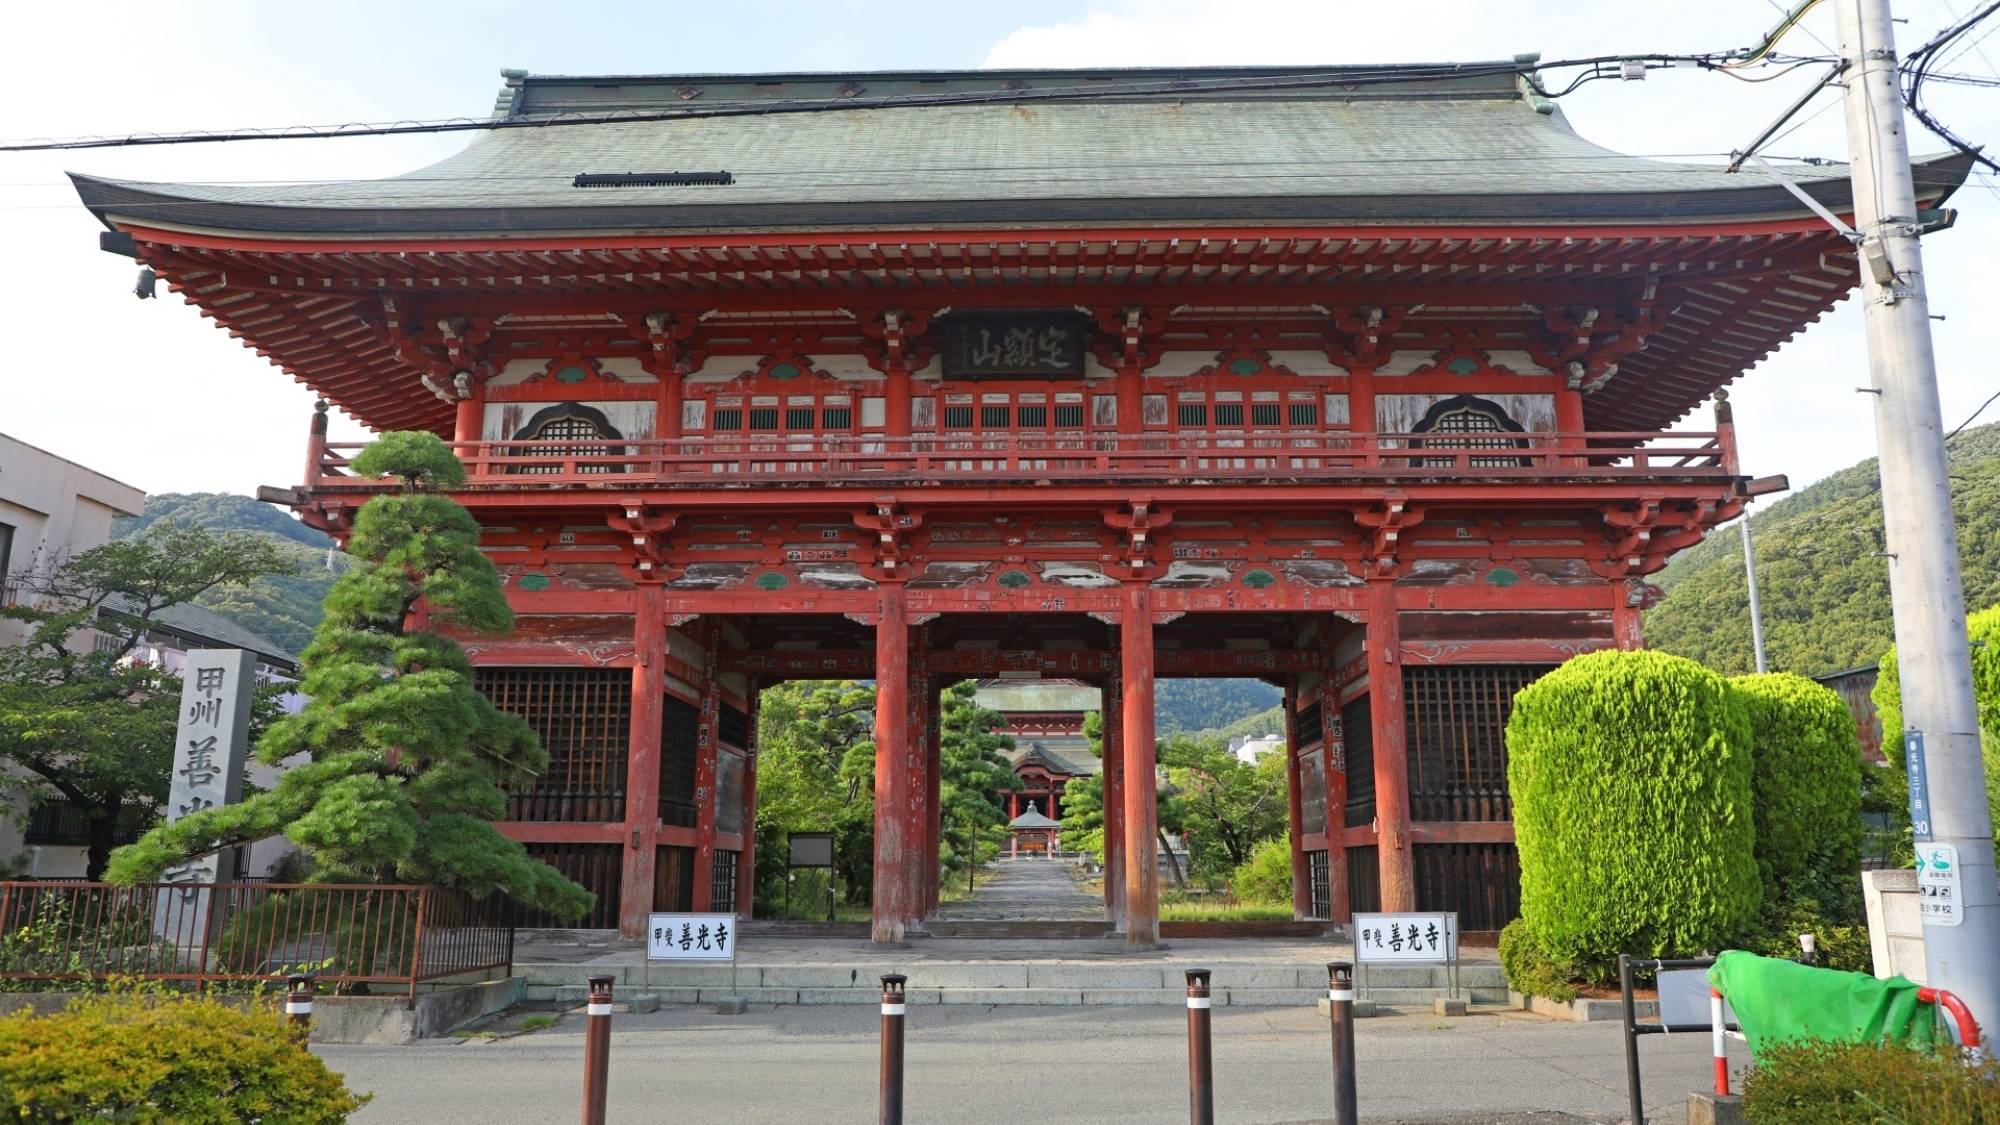 甲斐善光寺は、武田信玄創建の寺として知られています。